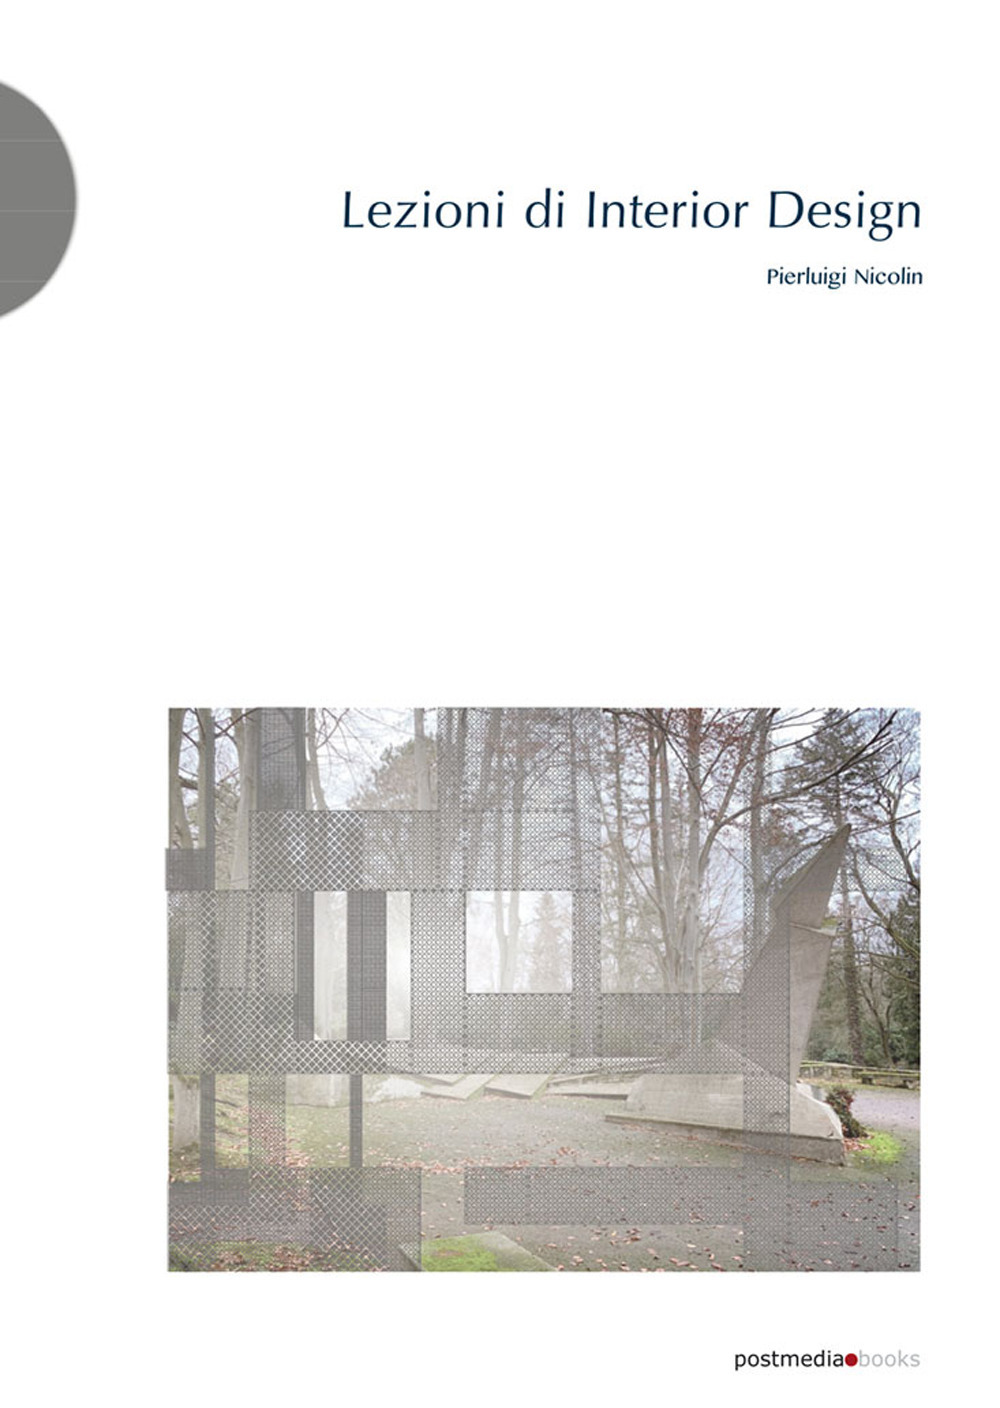 Libri Pierluigi Nicolin - Lezioni Di Interior Design NUOVO SIGILLATO, EDIZIONE DEL 24/11/2020 SUBITO DISPONIBILE